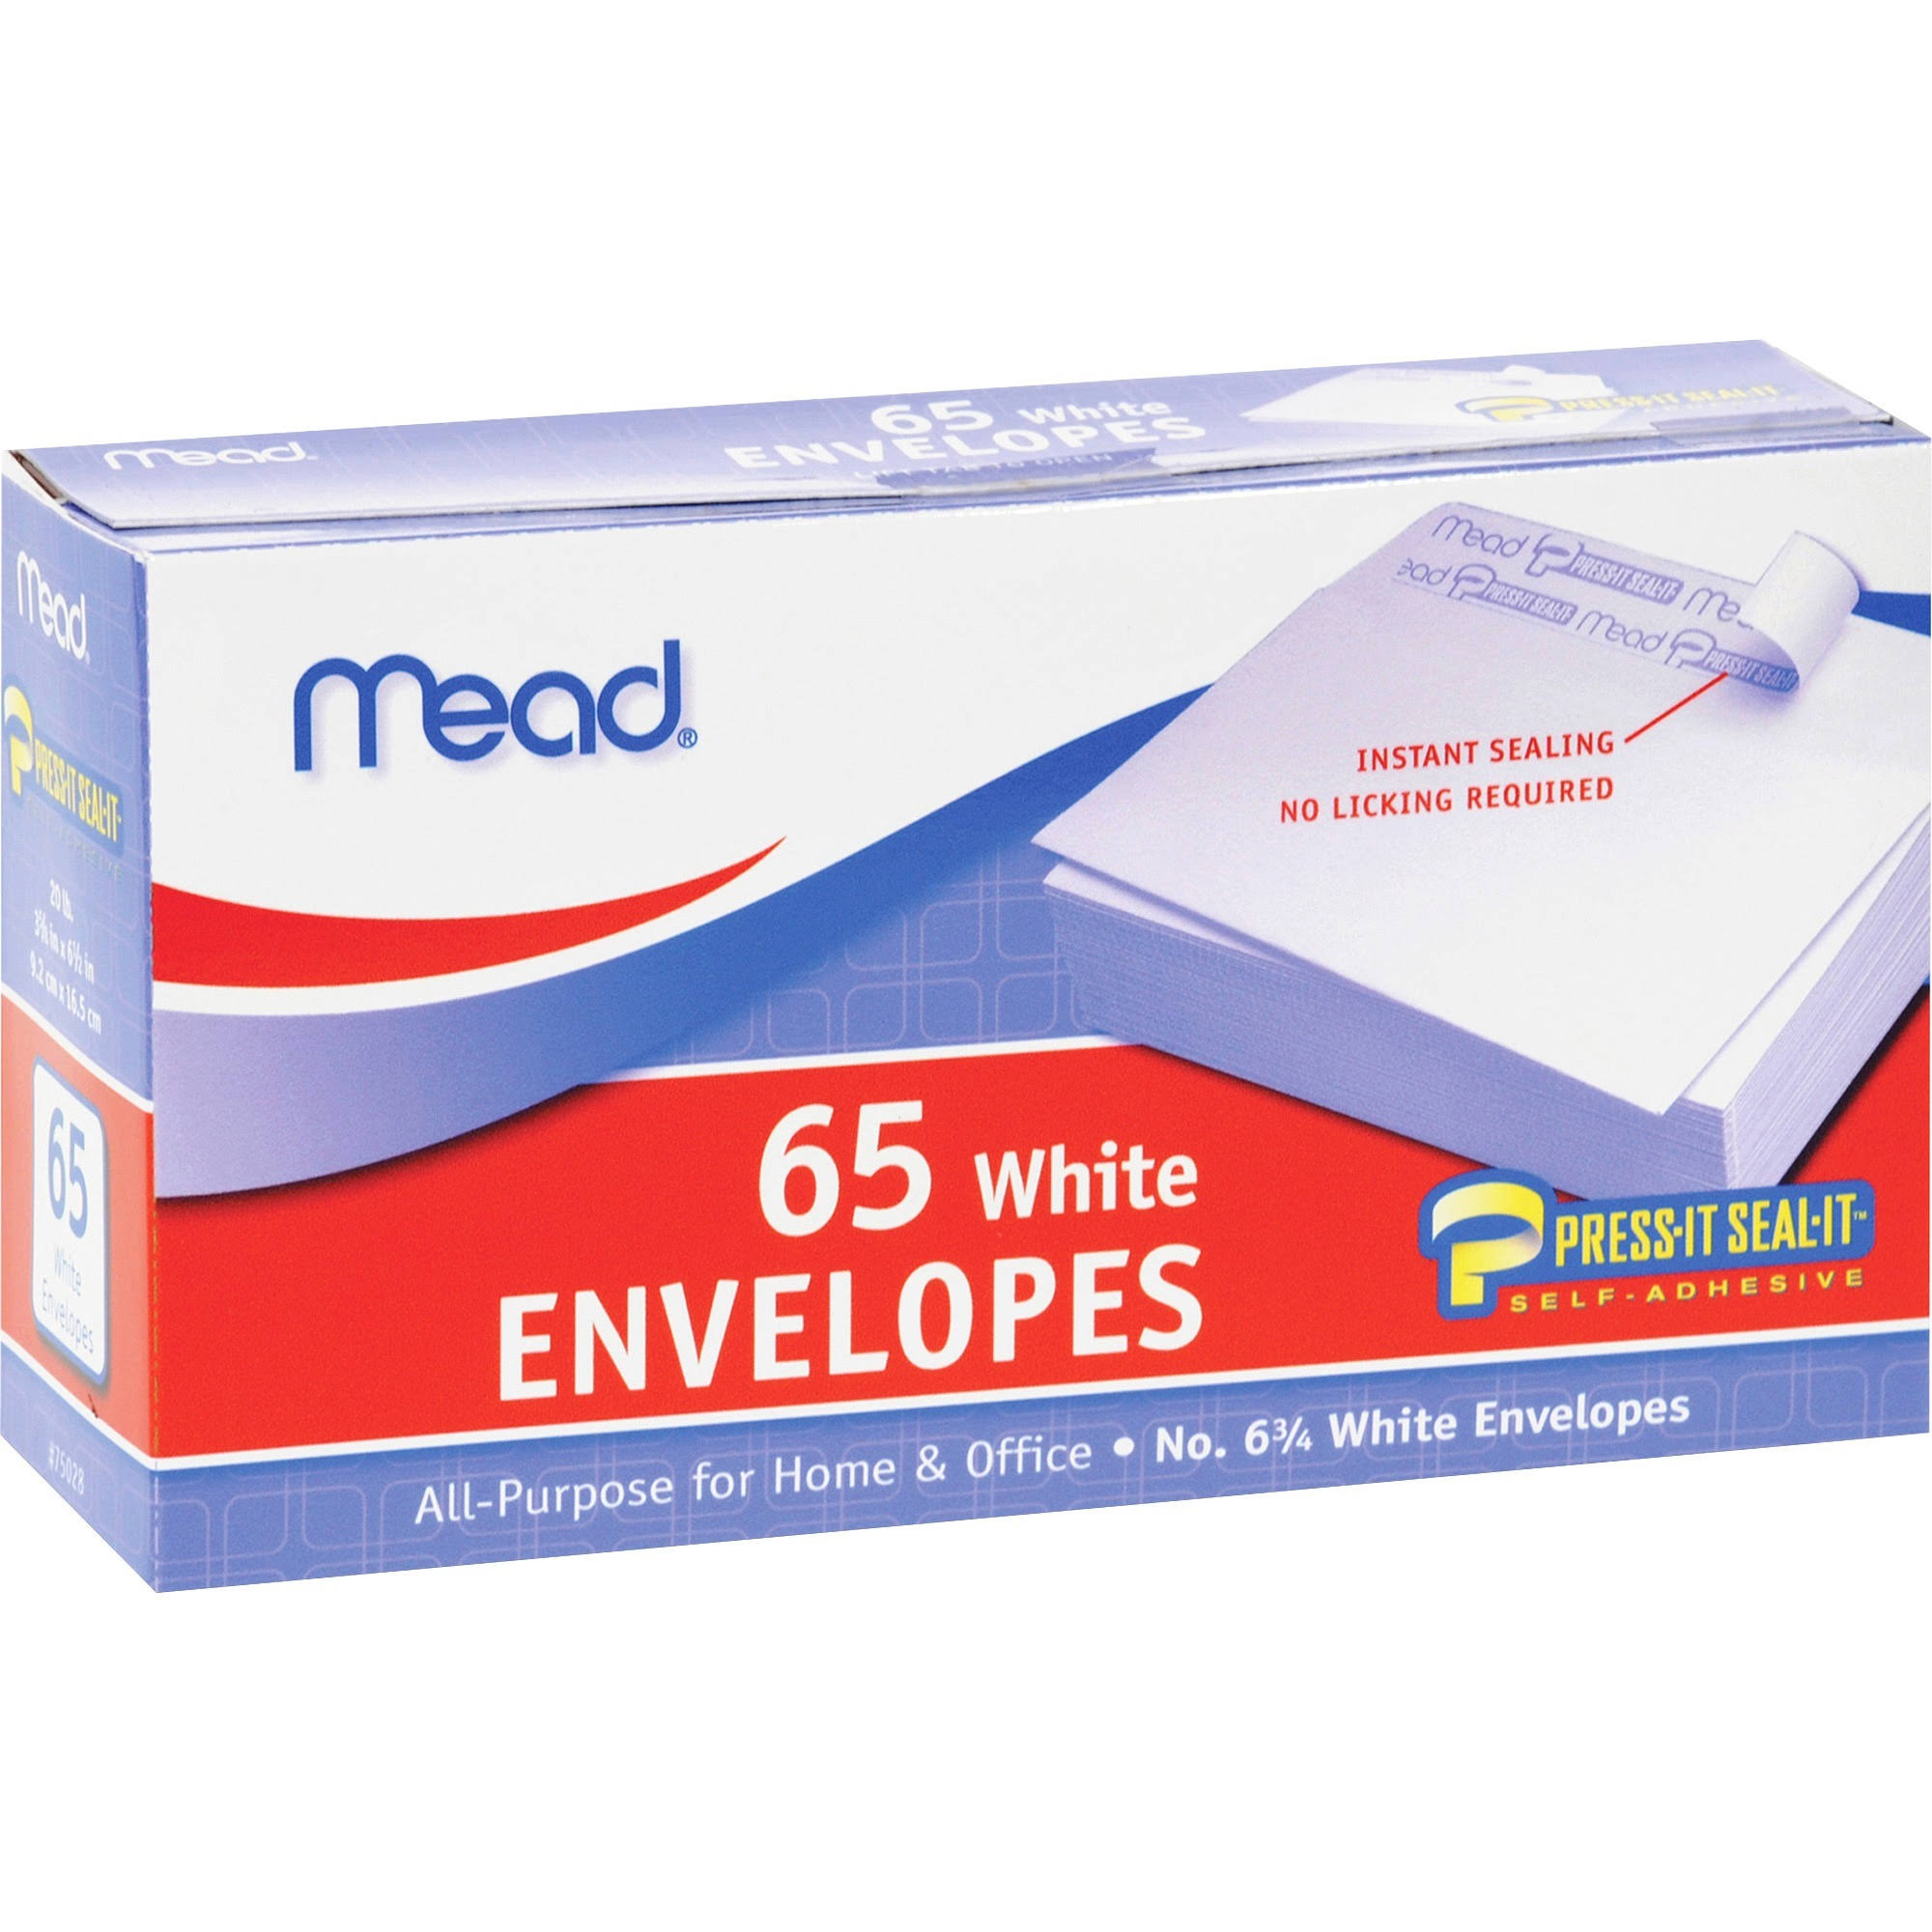 Mead Press-it Seal-it Envelopes - White, x65